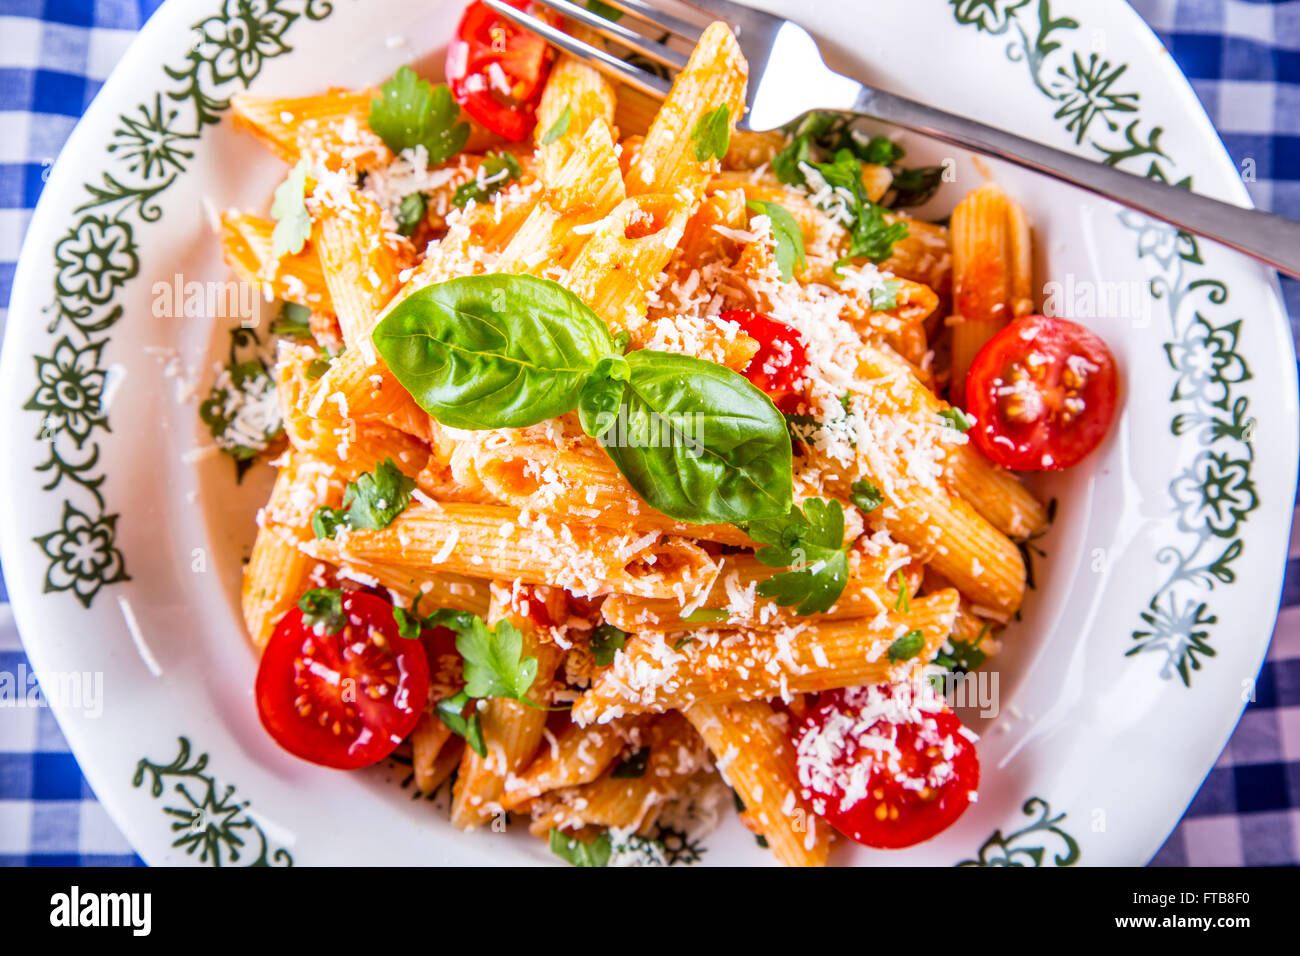 Plaque avec pene pâtes sauce bolognaise tomates cerise haut de persil et les feuilles de basilic sur nappe bleue à carreaux. L'italien et Med Banque D'Images